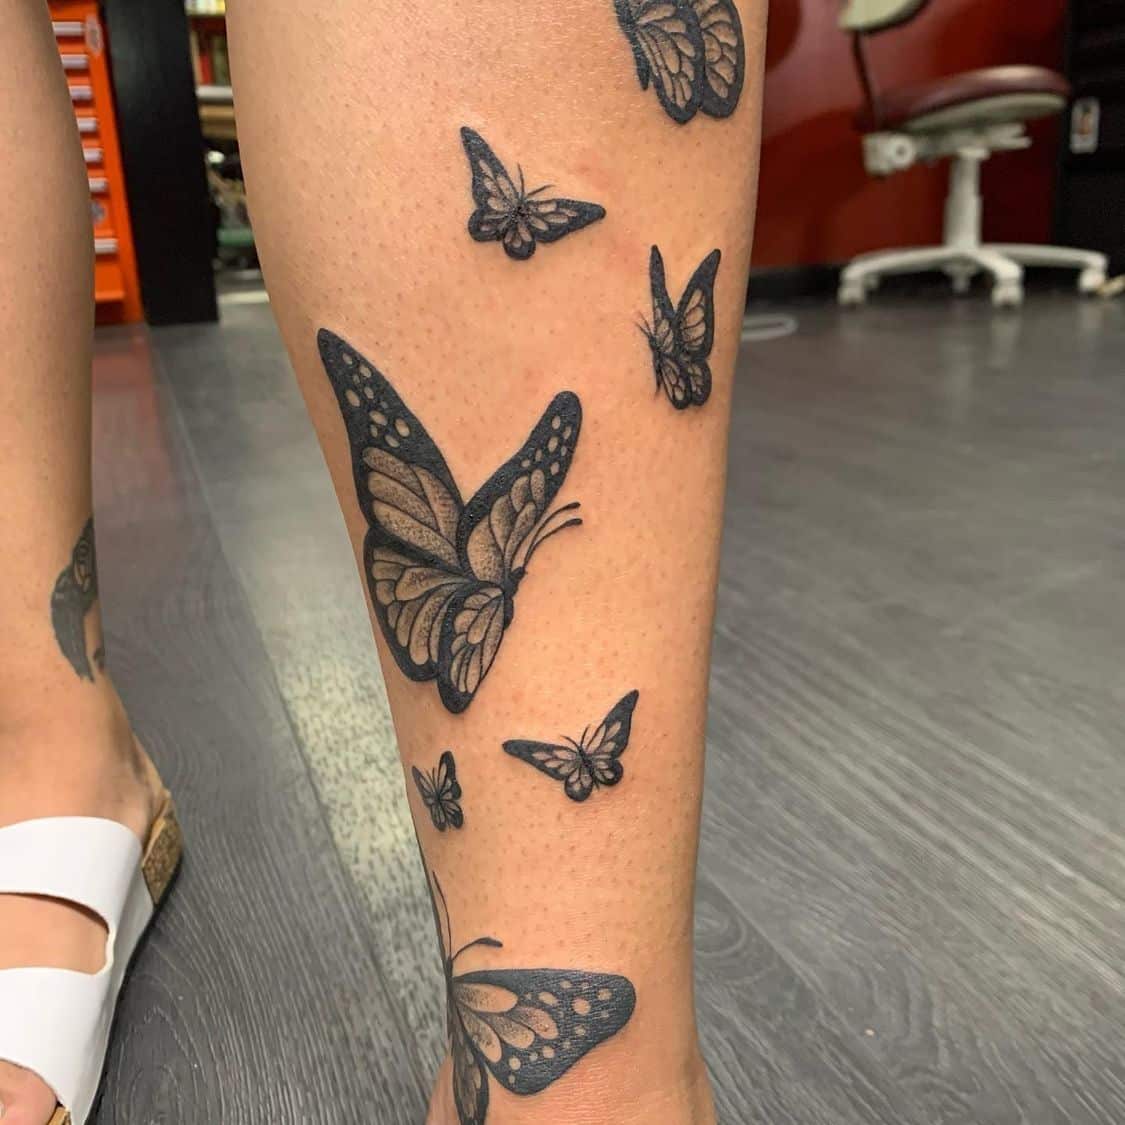 Butterfly shin tattoo ideas